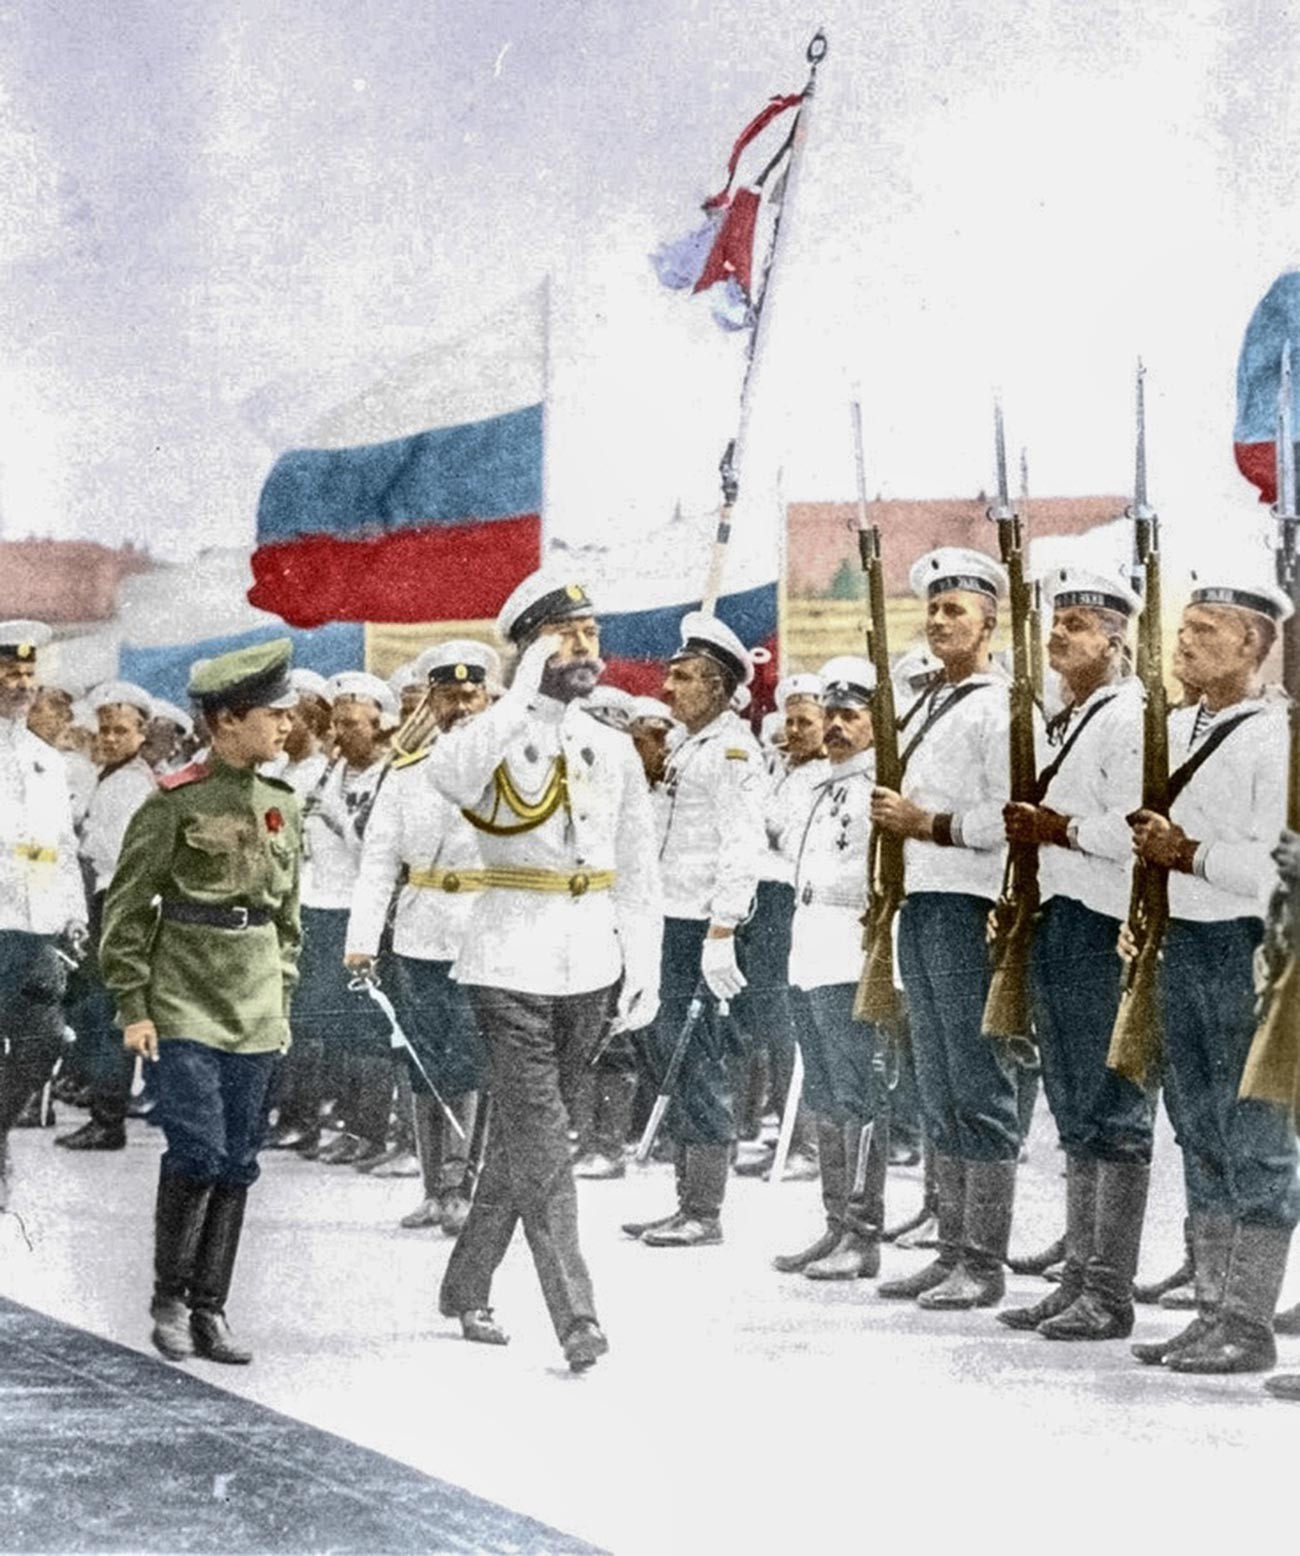 Tsar Nikolai 2º definiu branco, azul e vermelho como as cores da bandeira nacional russa em 1896